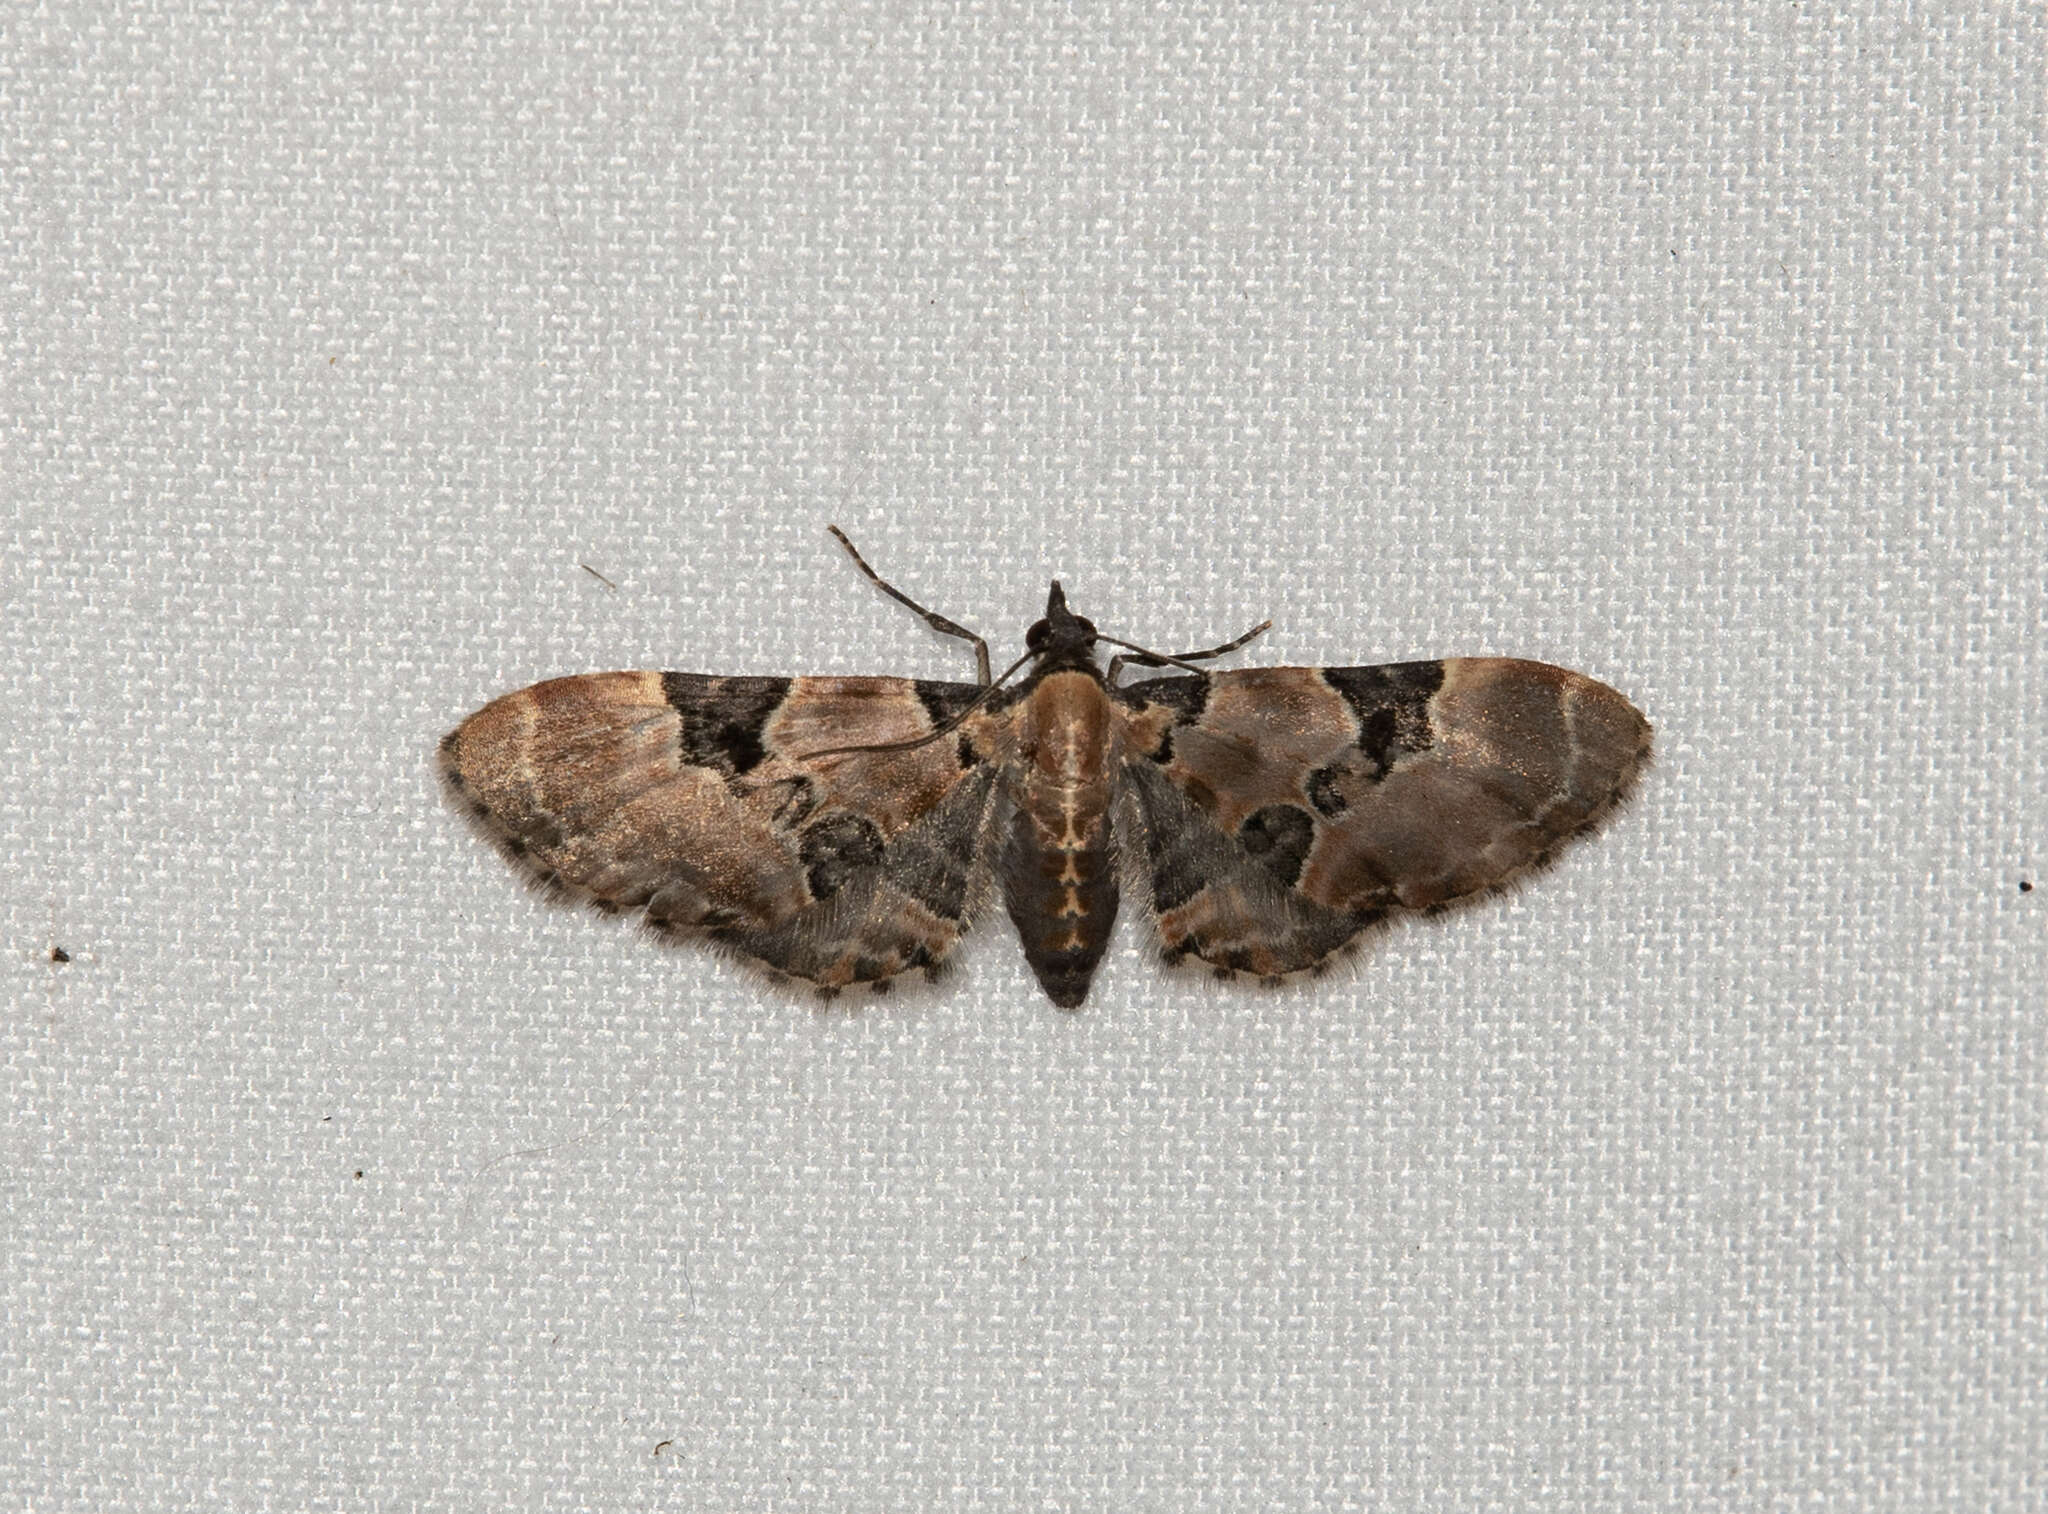 Image of Eupithecia stellata Hulst 1896